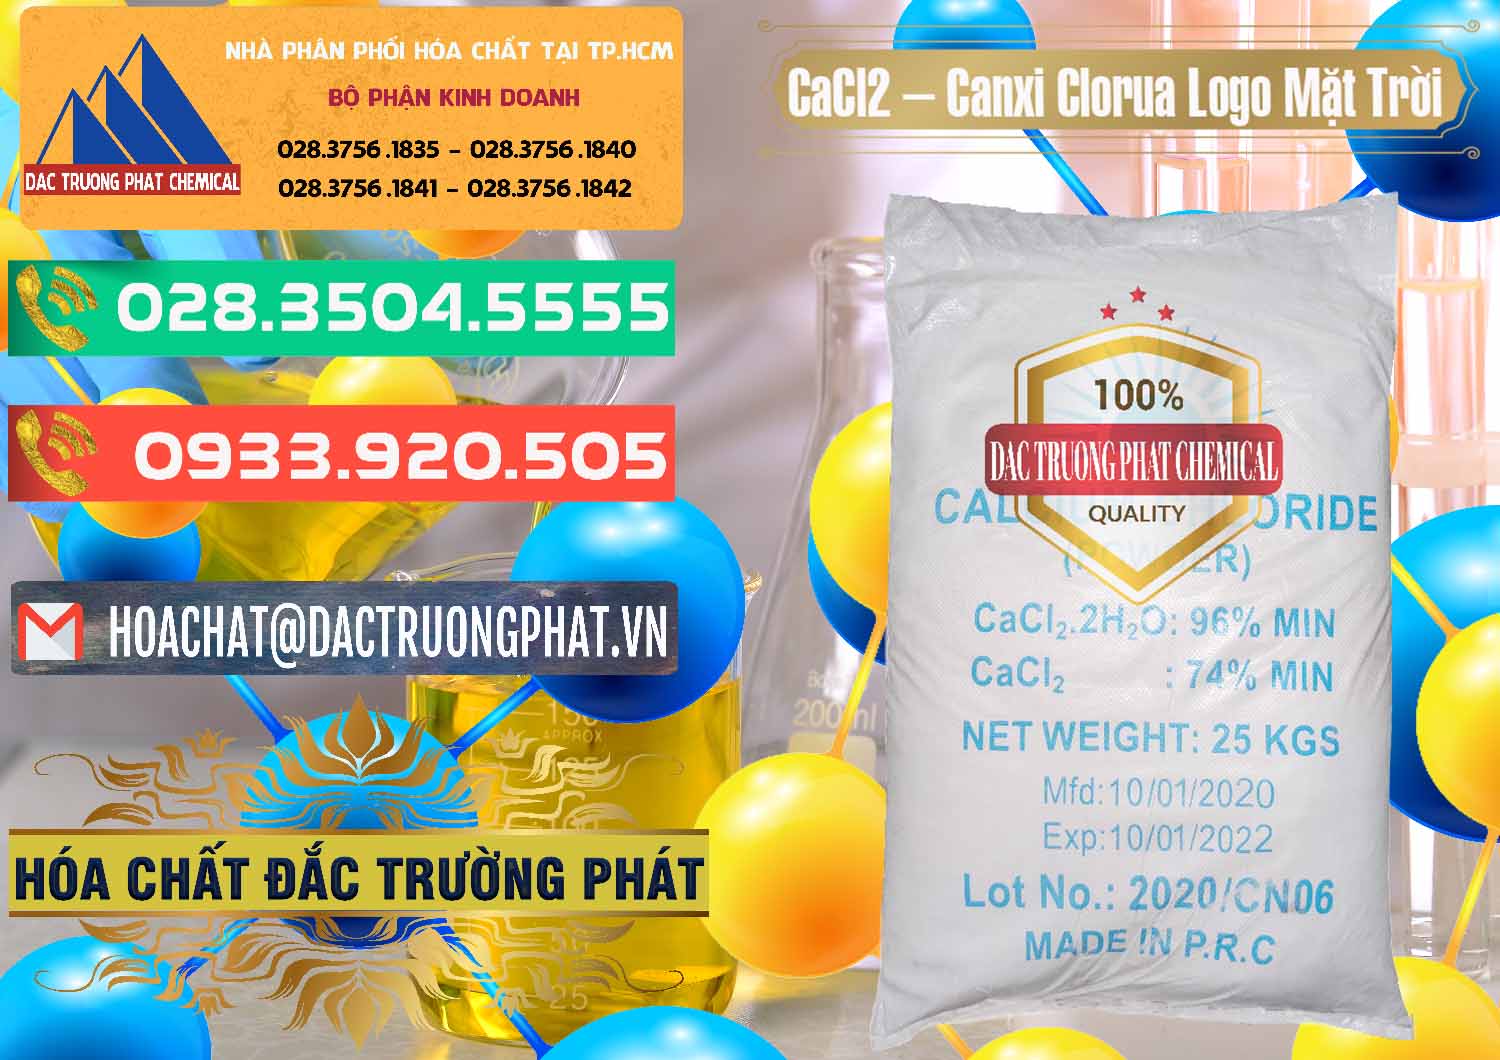 Cty nhập khẩu và bán CaCl2 – Canxi Clorua 96% Logo Mặt Trời Trung Quốc China - 0041 - Công ty phân phối & cung cấp hóa chất tại TP.HCM - congtyhoachat.com.vn